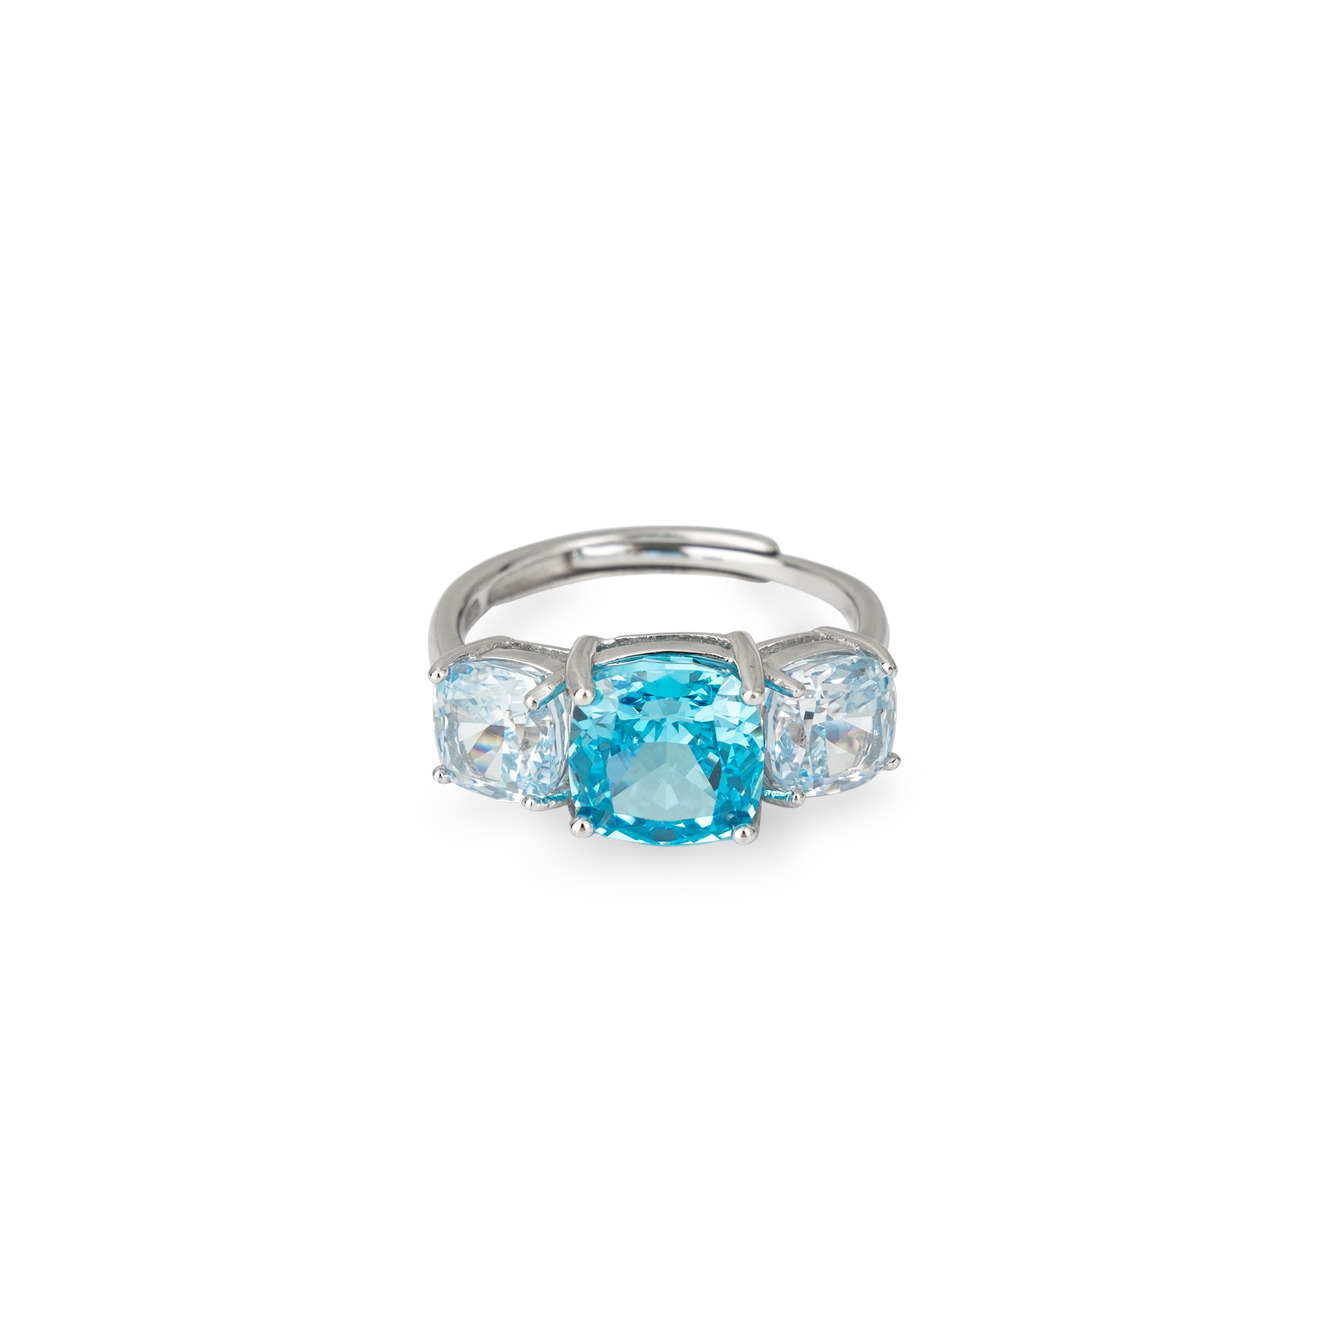 Holy Silver Серебряное кольцо с тремя крупными голубыми кристаллами holy silver серьги из серебра с крупными зелеными кристаллами огранки груша